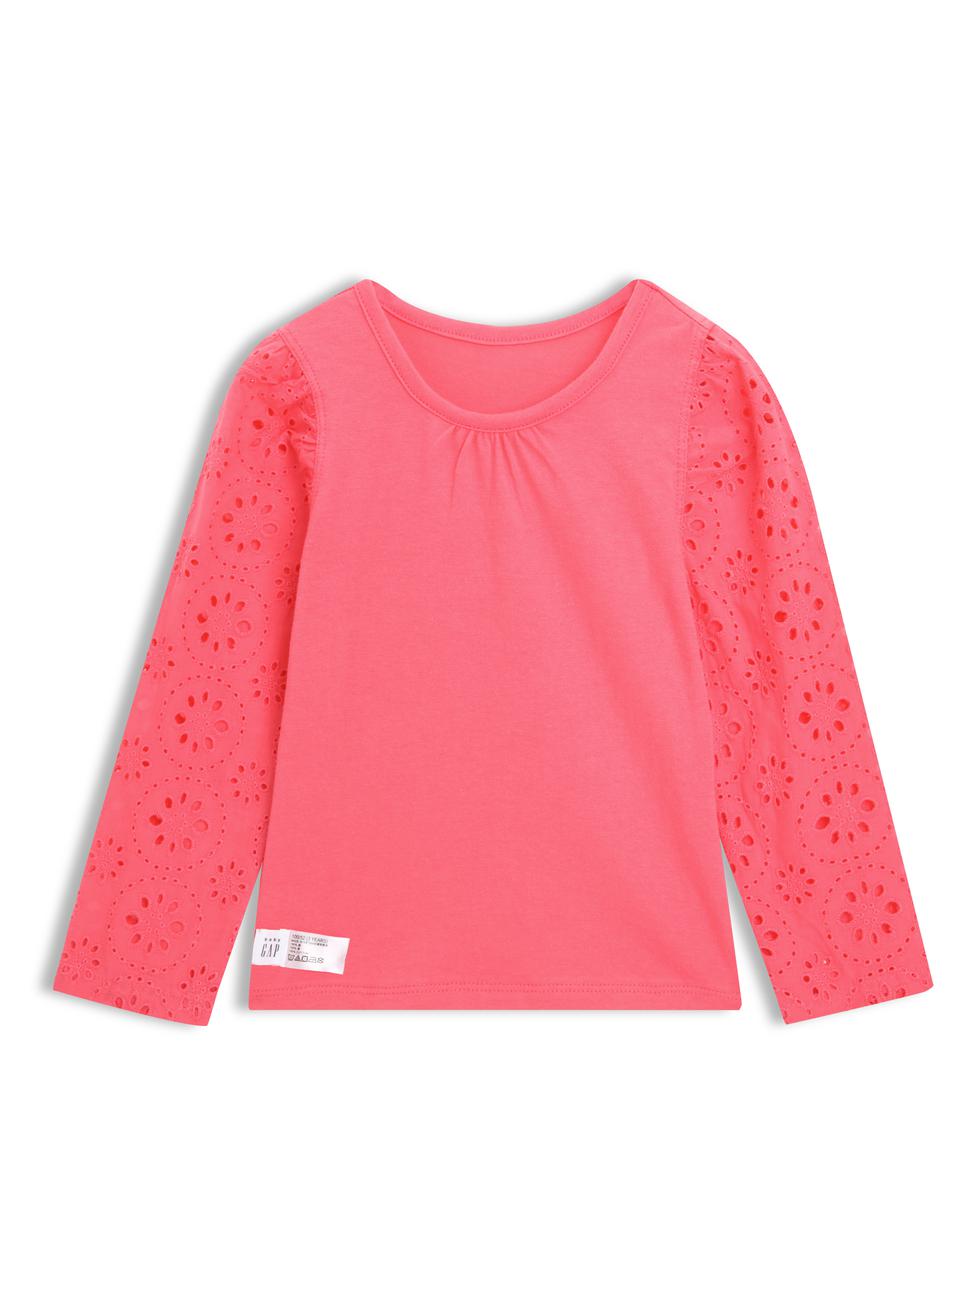 女幼童裝|長袖T恤-橙粉色